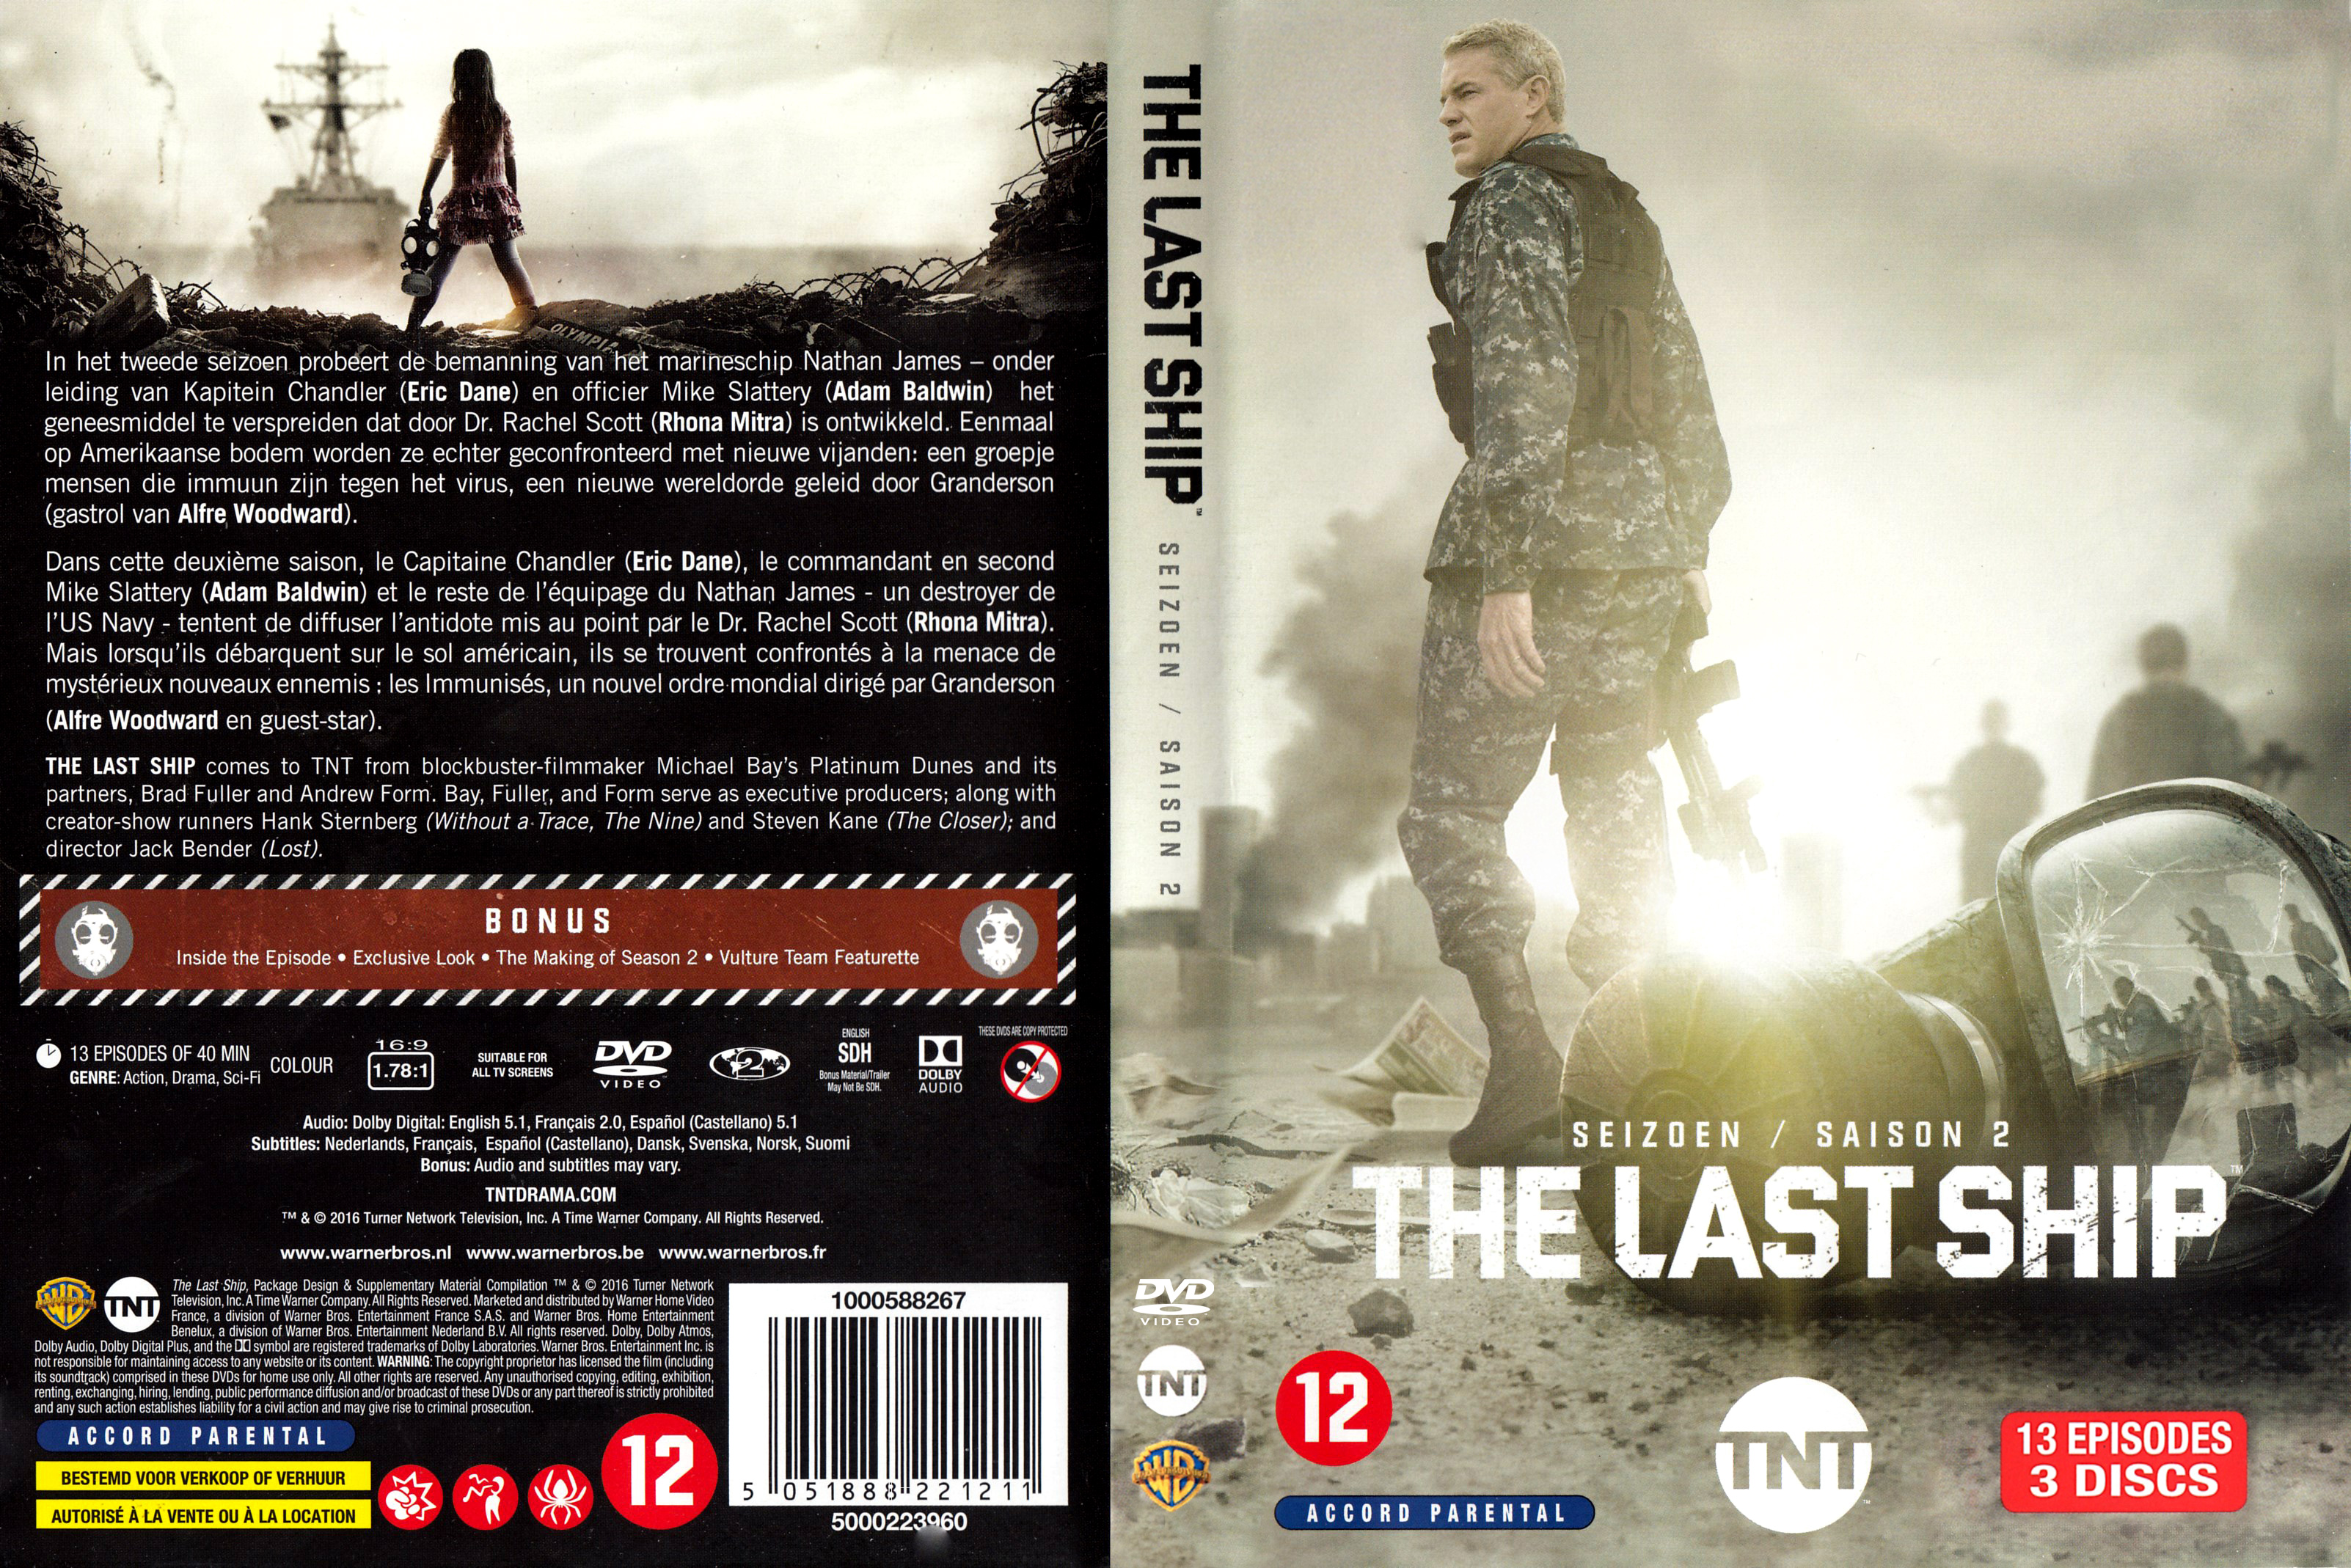 Jaquette DVD The last ship saison 2